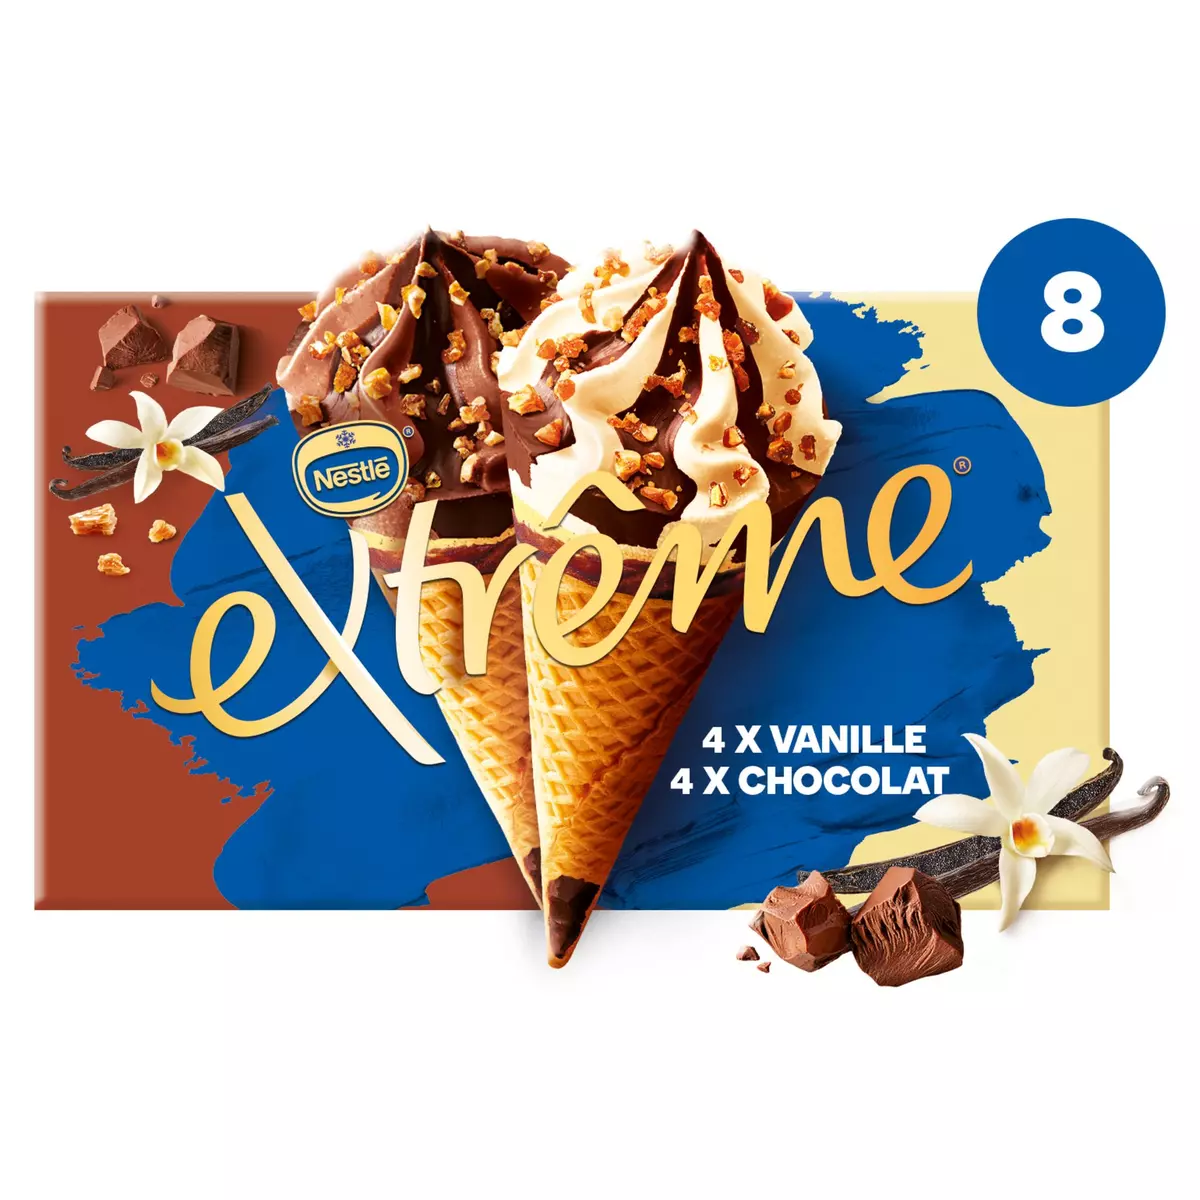 EXTREME Cône glacé vanille et vanille chocolat 8 pièces 544g